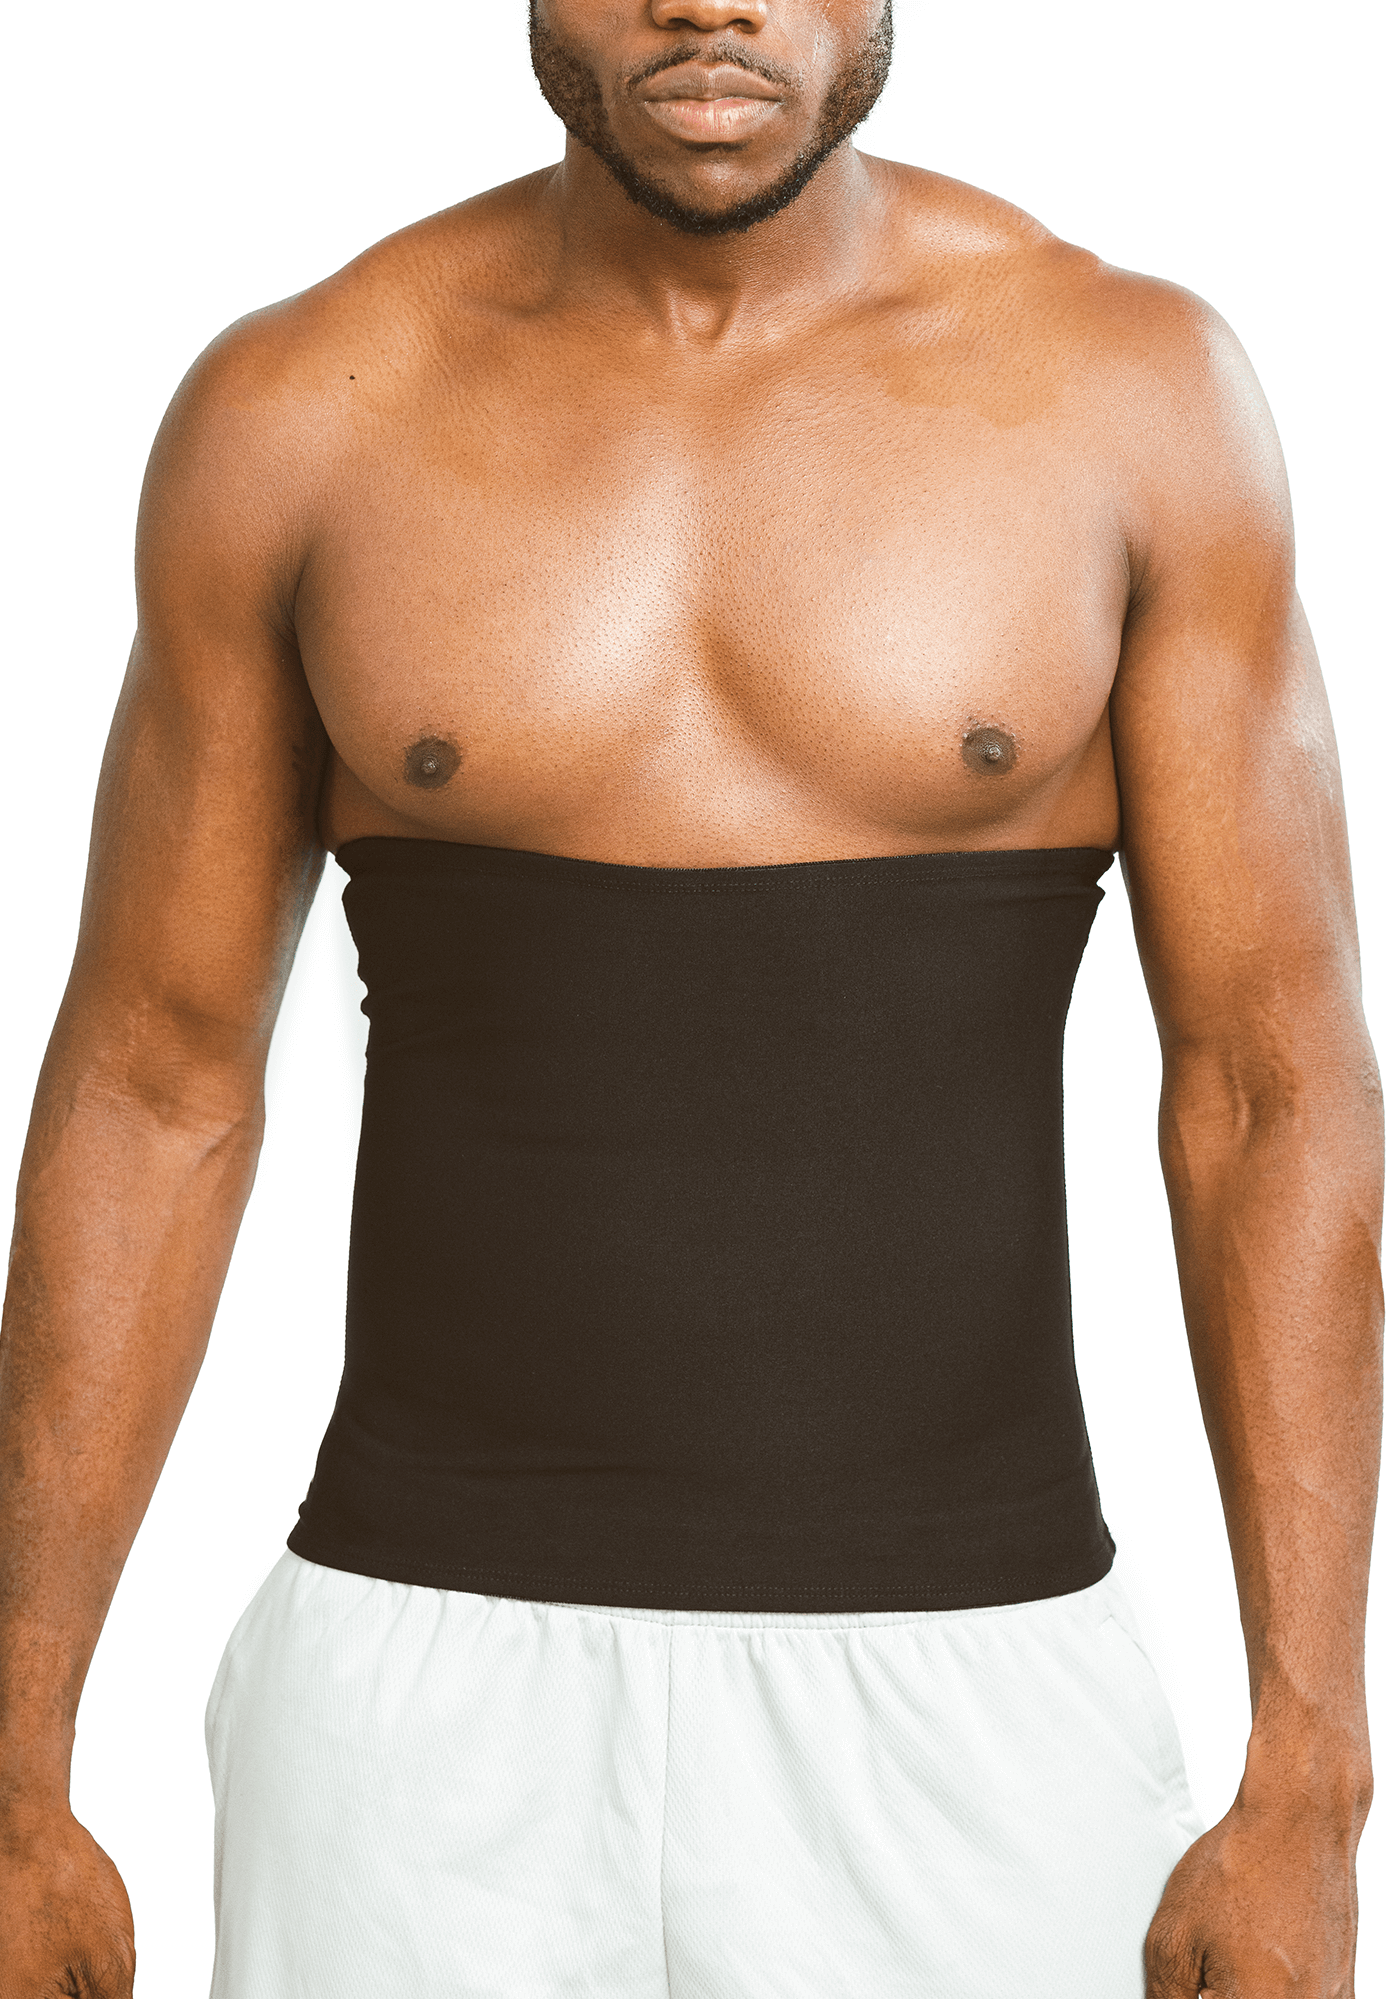 Men Sweat Sauna Shaper Waist Trainer Tummy Belly Compression Shirt